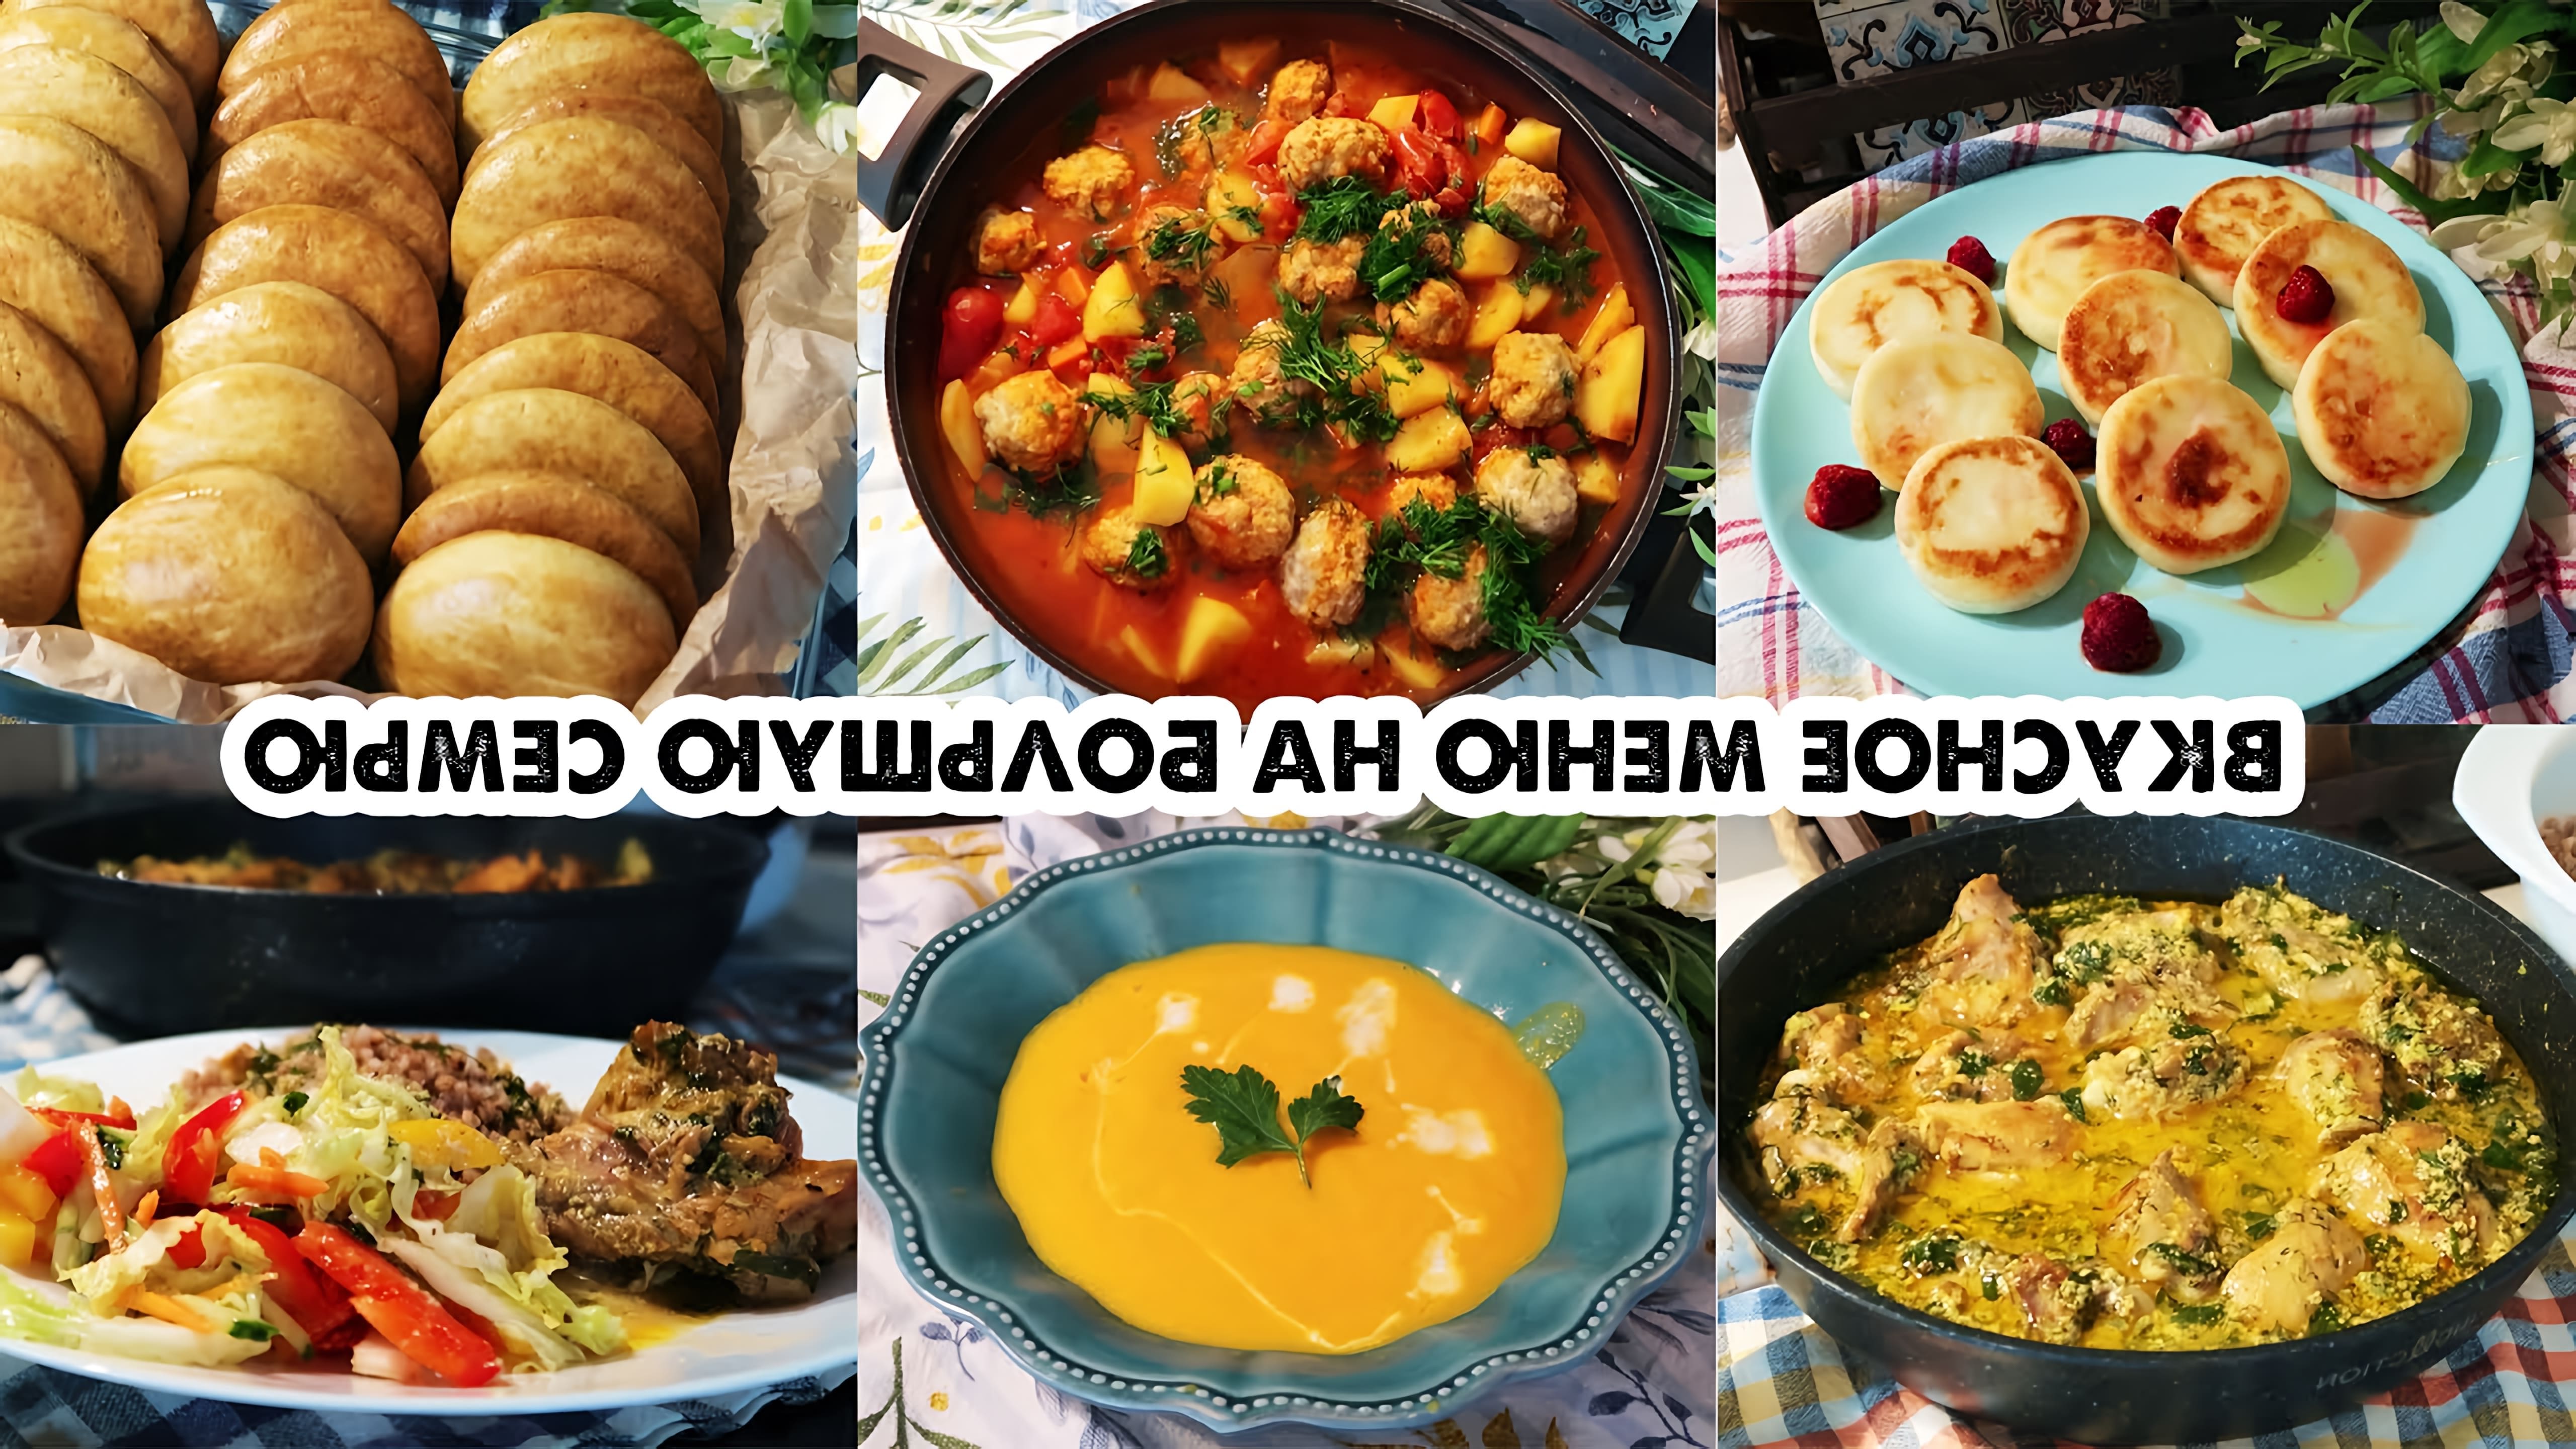 В этом видео автор показывает, как приготовить 7 блюд на 2-3 дня для большой семьи: завтрак, обеды и ужин, а также выпечку